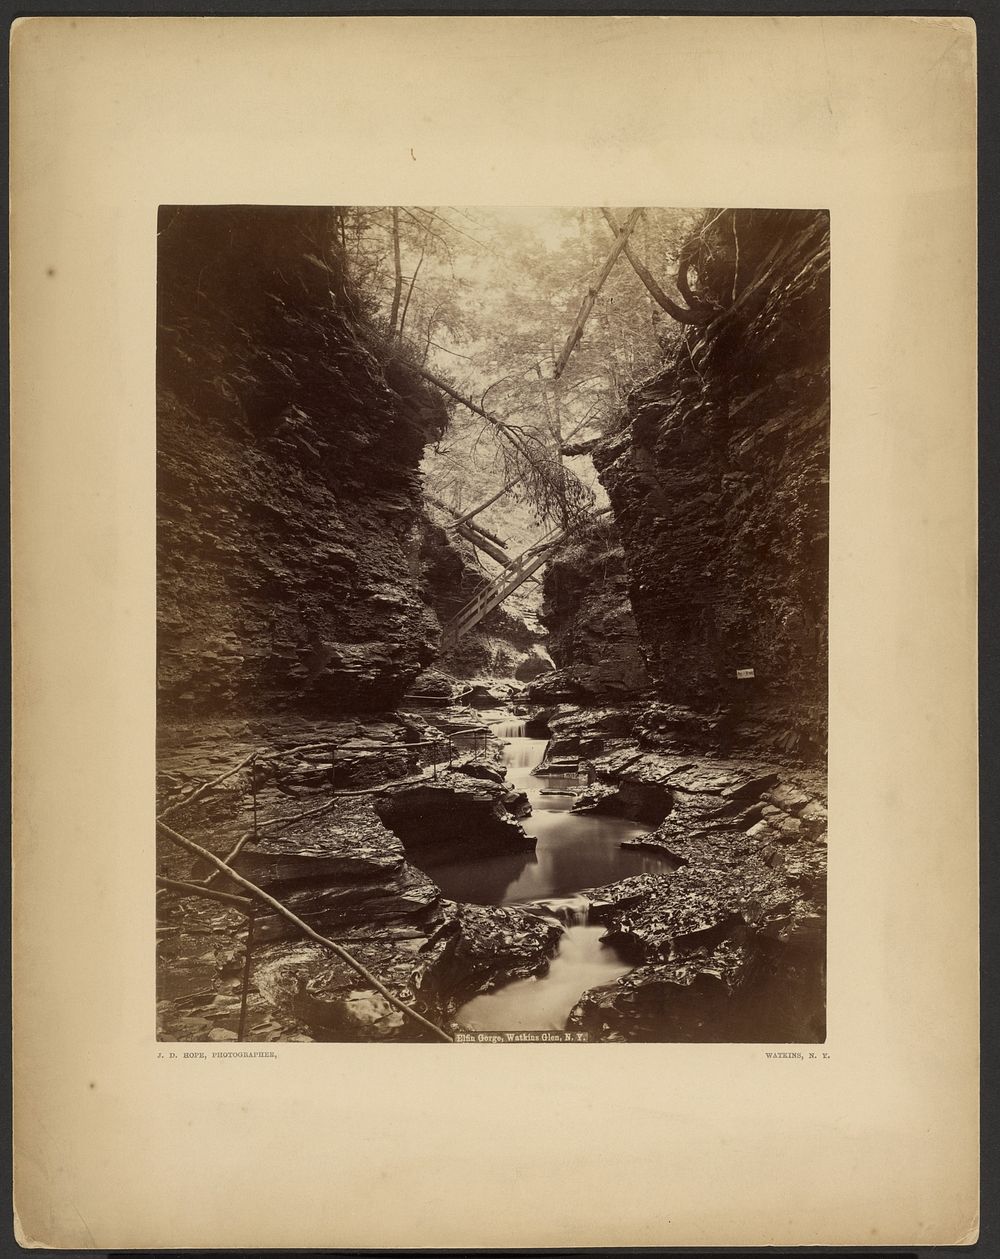 Elfin Gorge, Watkins Glen, N.Y. by James Douglas Hope